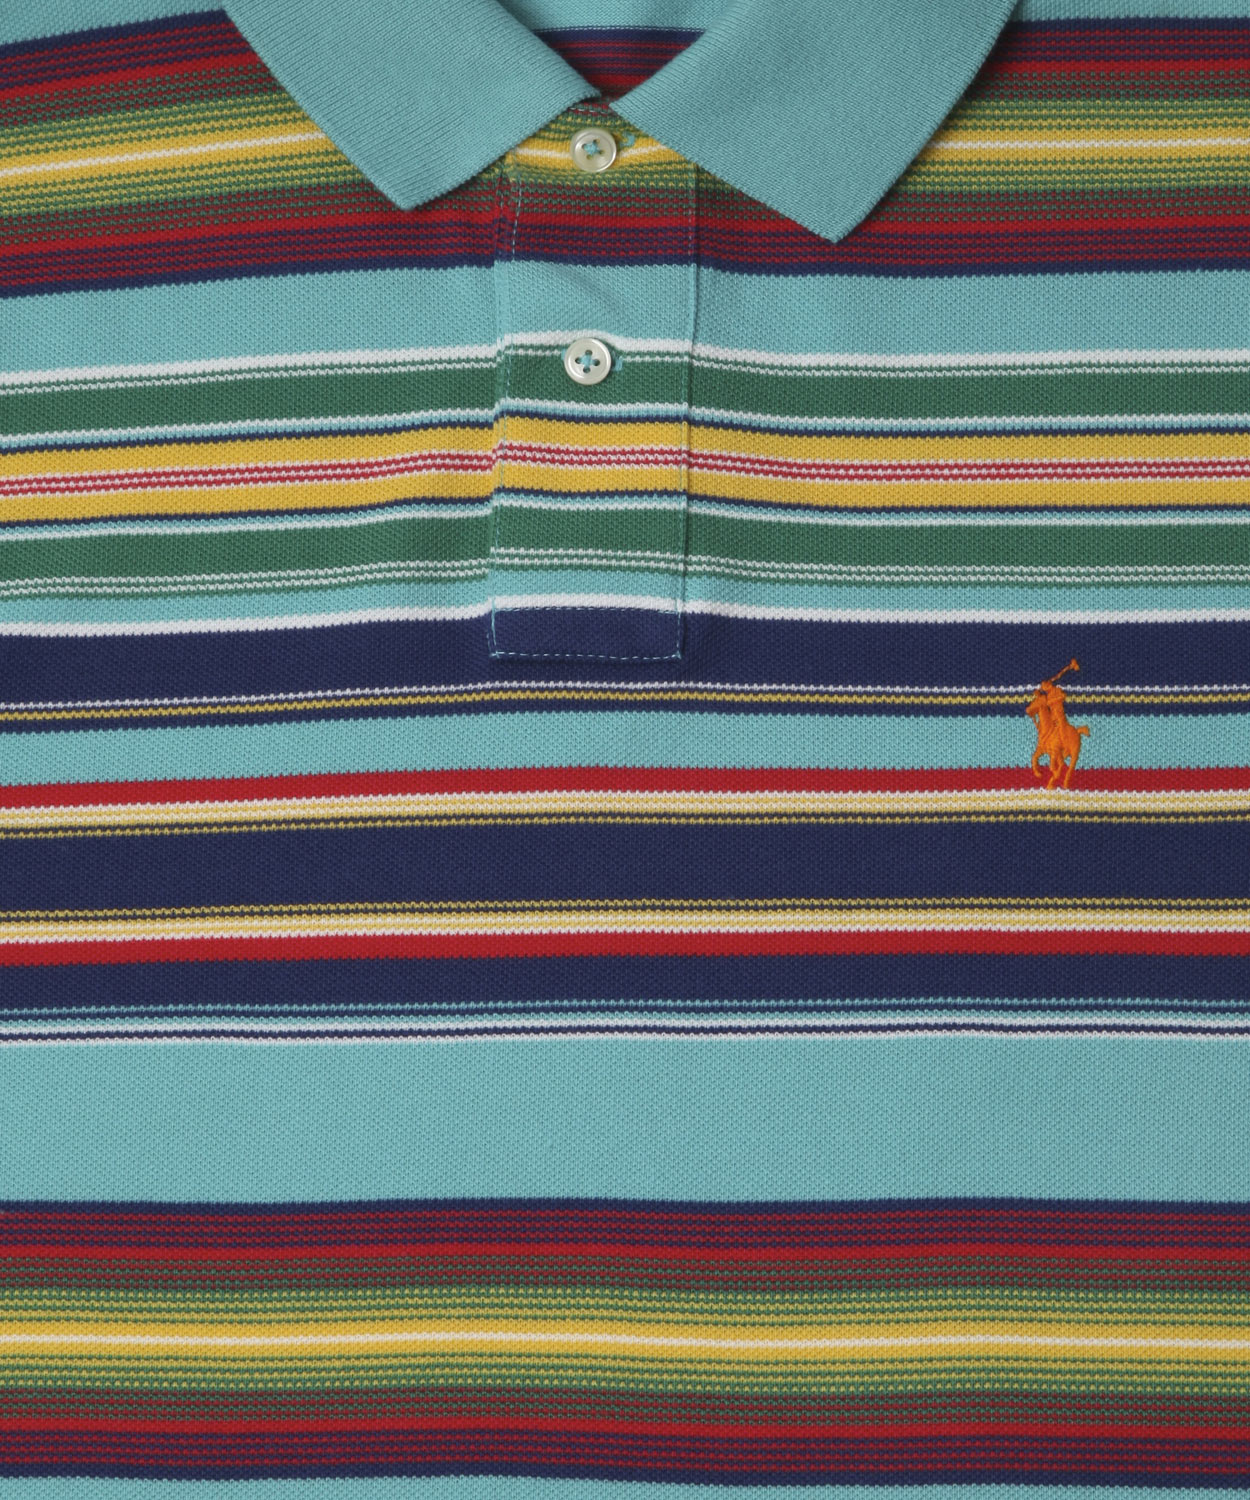 Lyst - Polo Ralph Lauren Multi Stripe Polo Shirt for Men